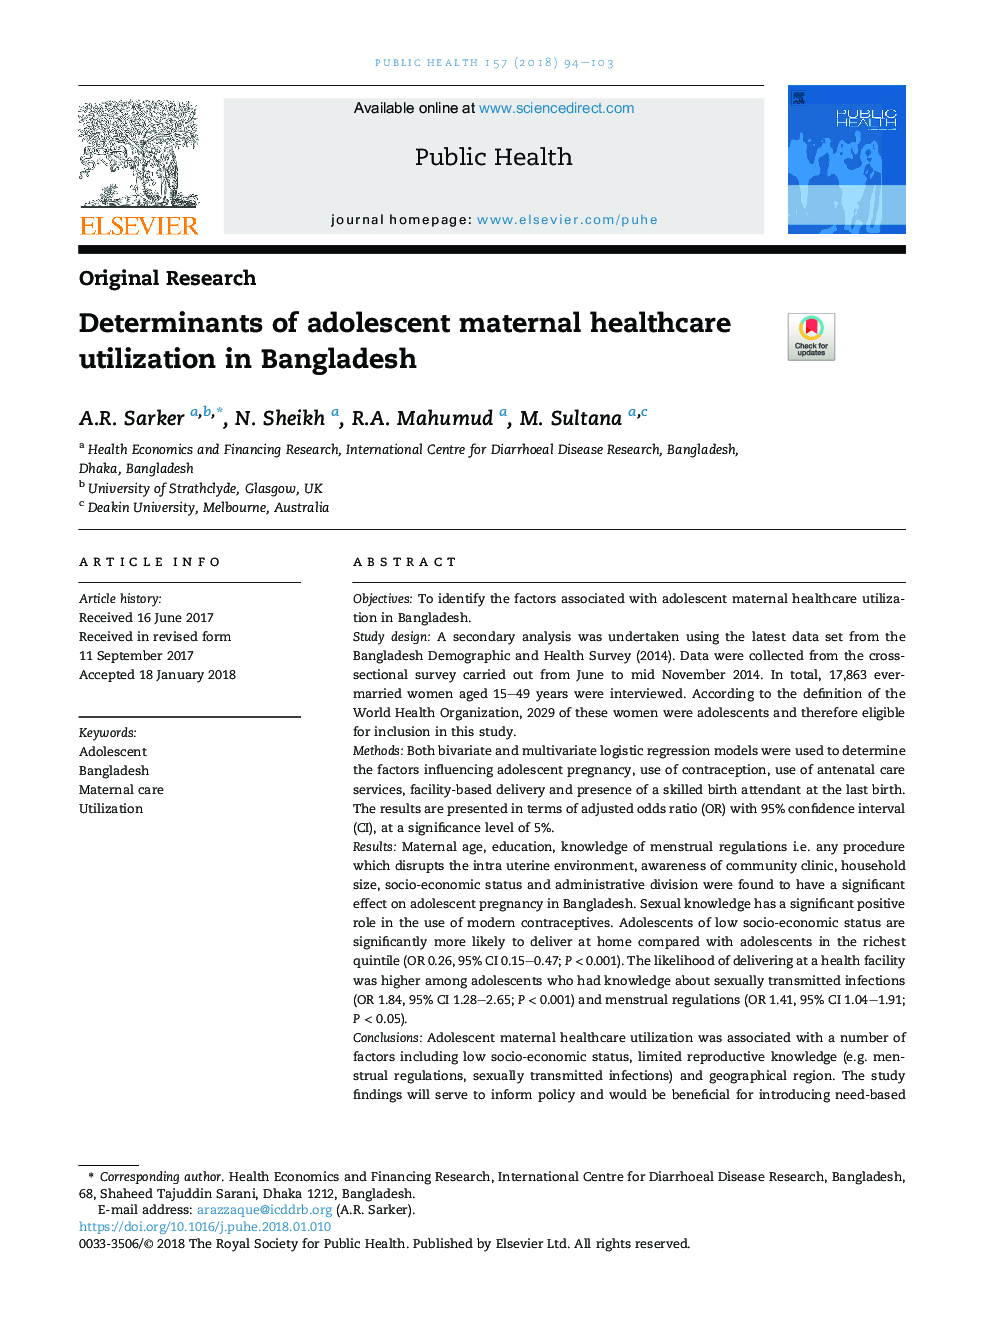 عوامل تعیین کننده استفاده از مراقبت های بهداشتی مادران در بنگلادش 